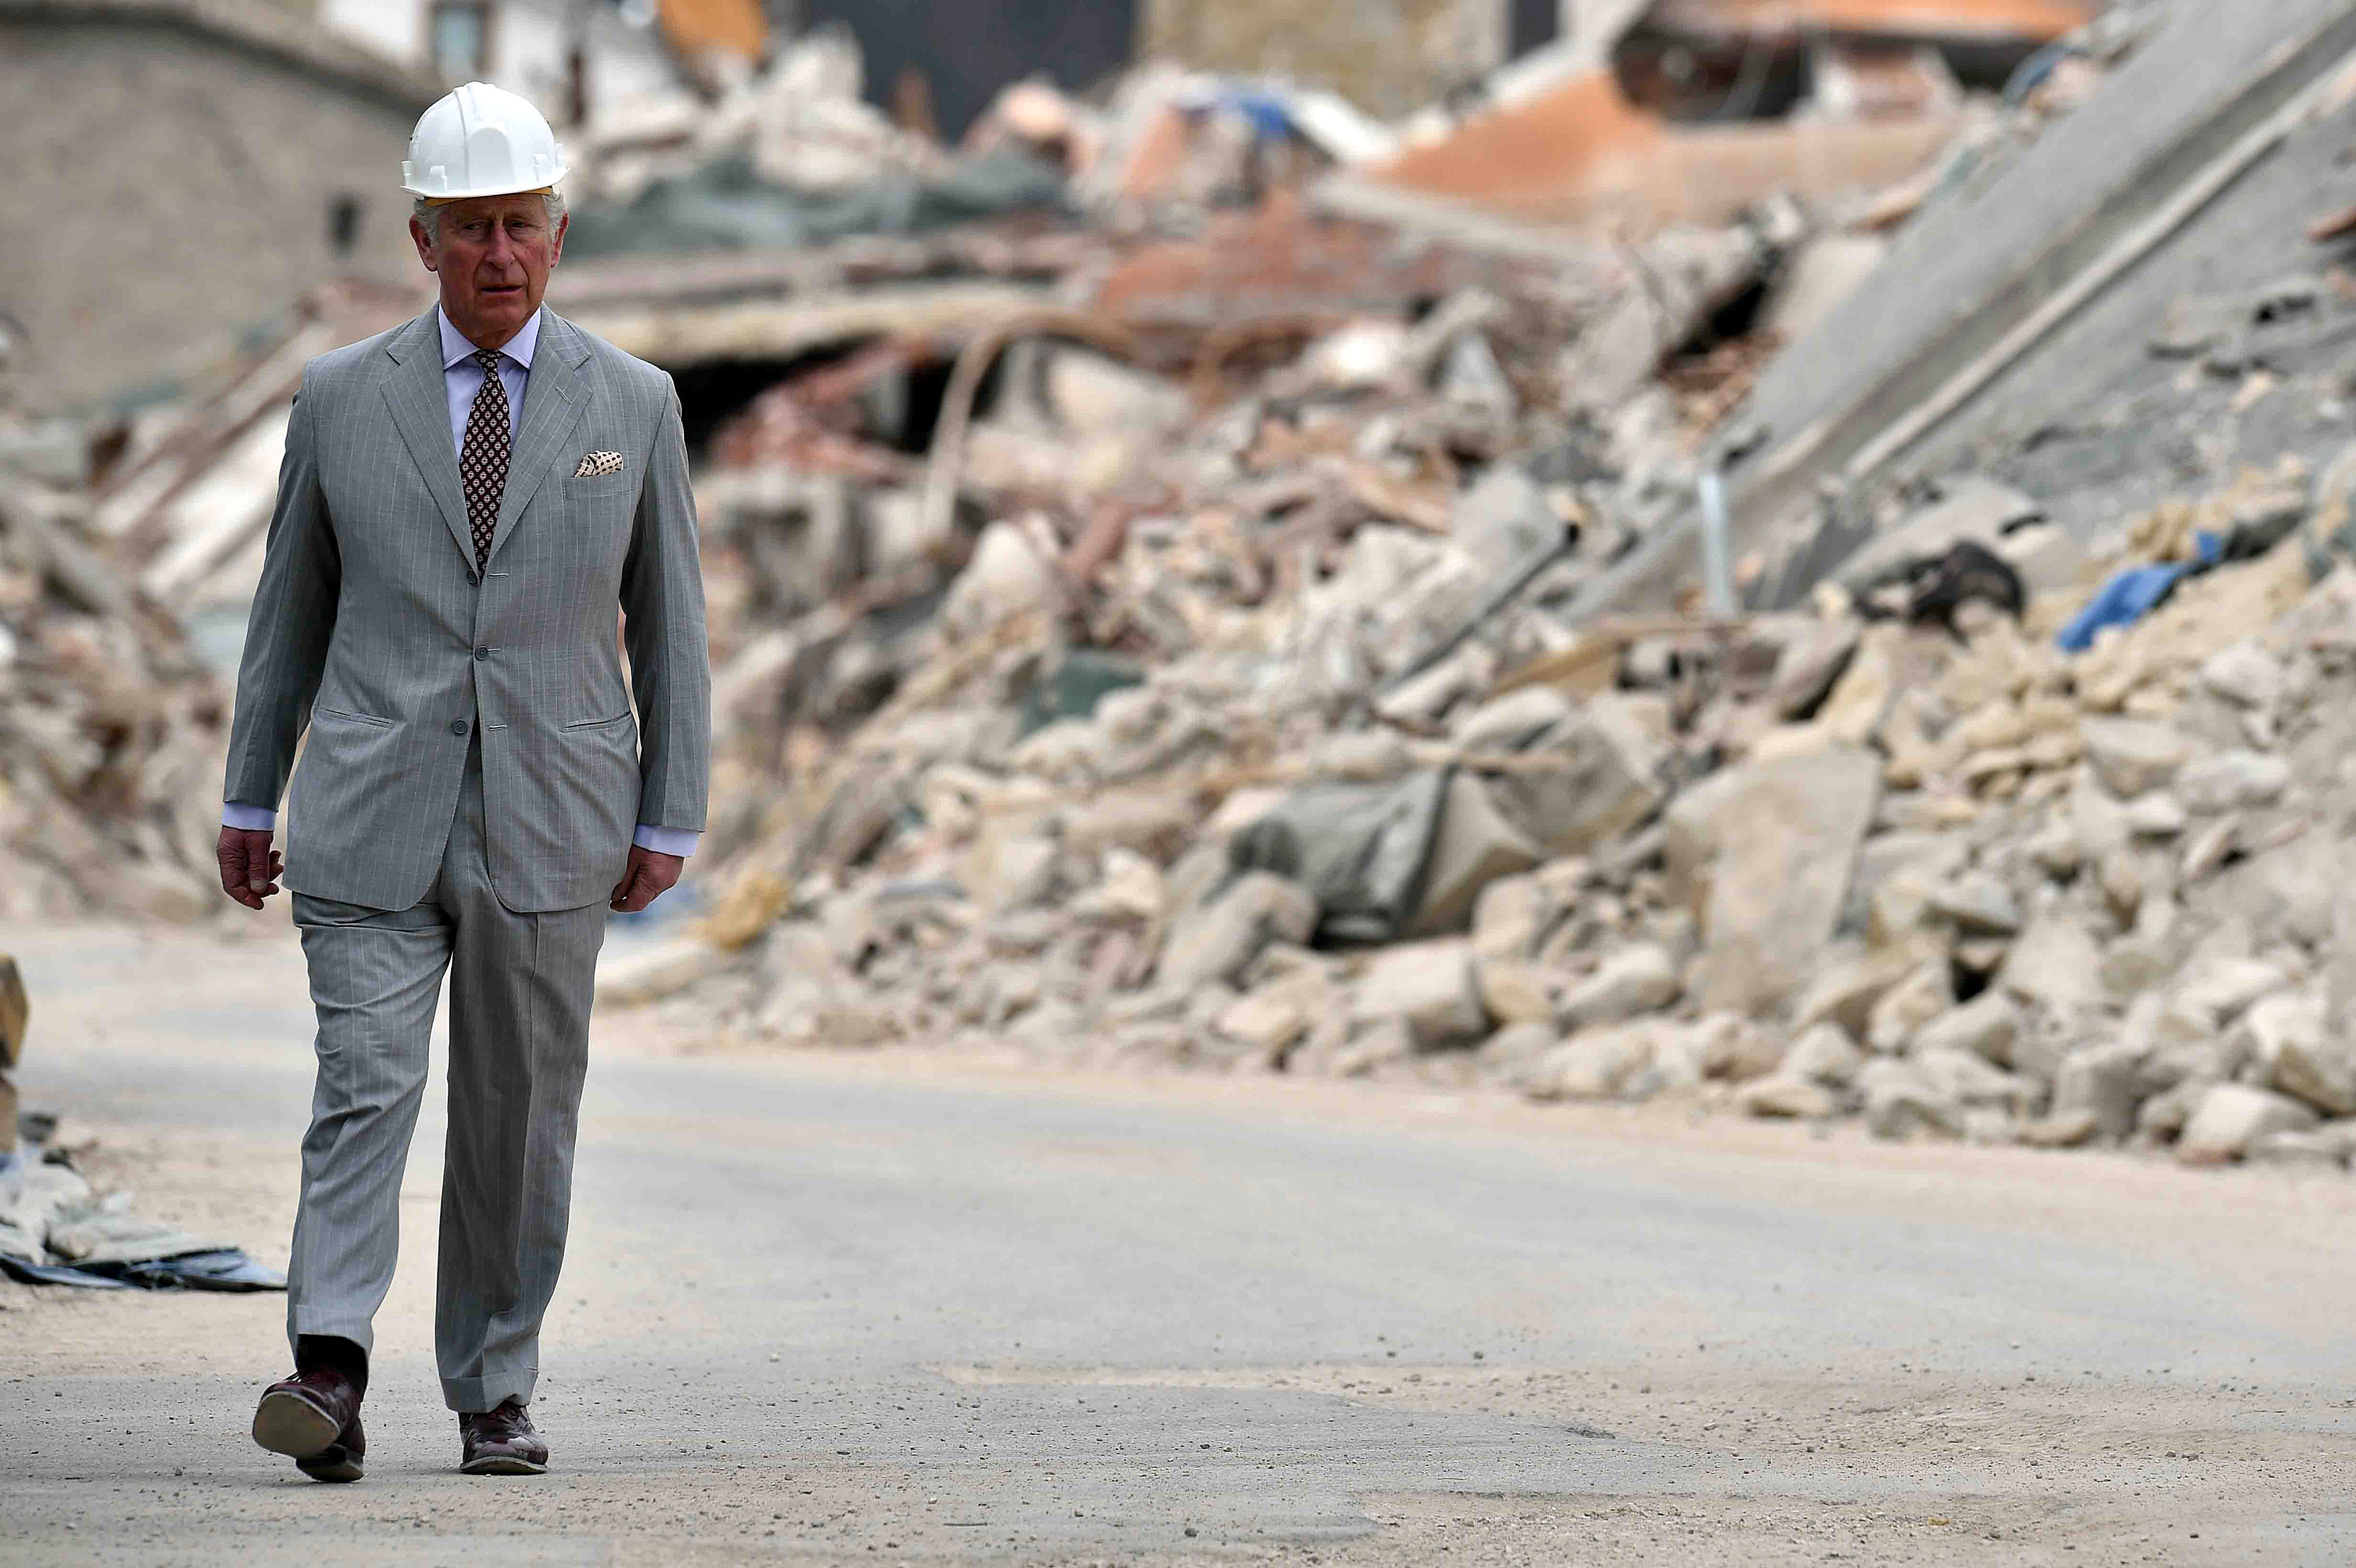 وصول الأمير تشارلز إلى مناطق إيطالية تعرضت لزلزال قتل 300 شخص